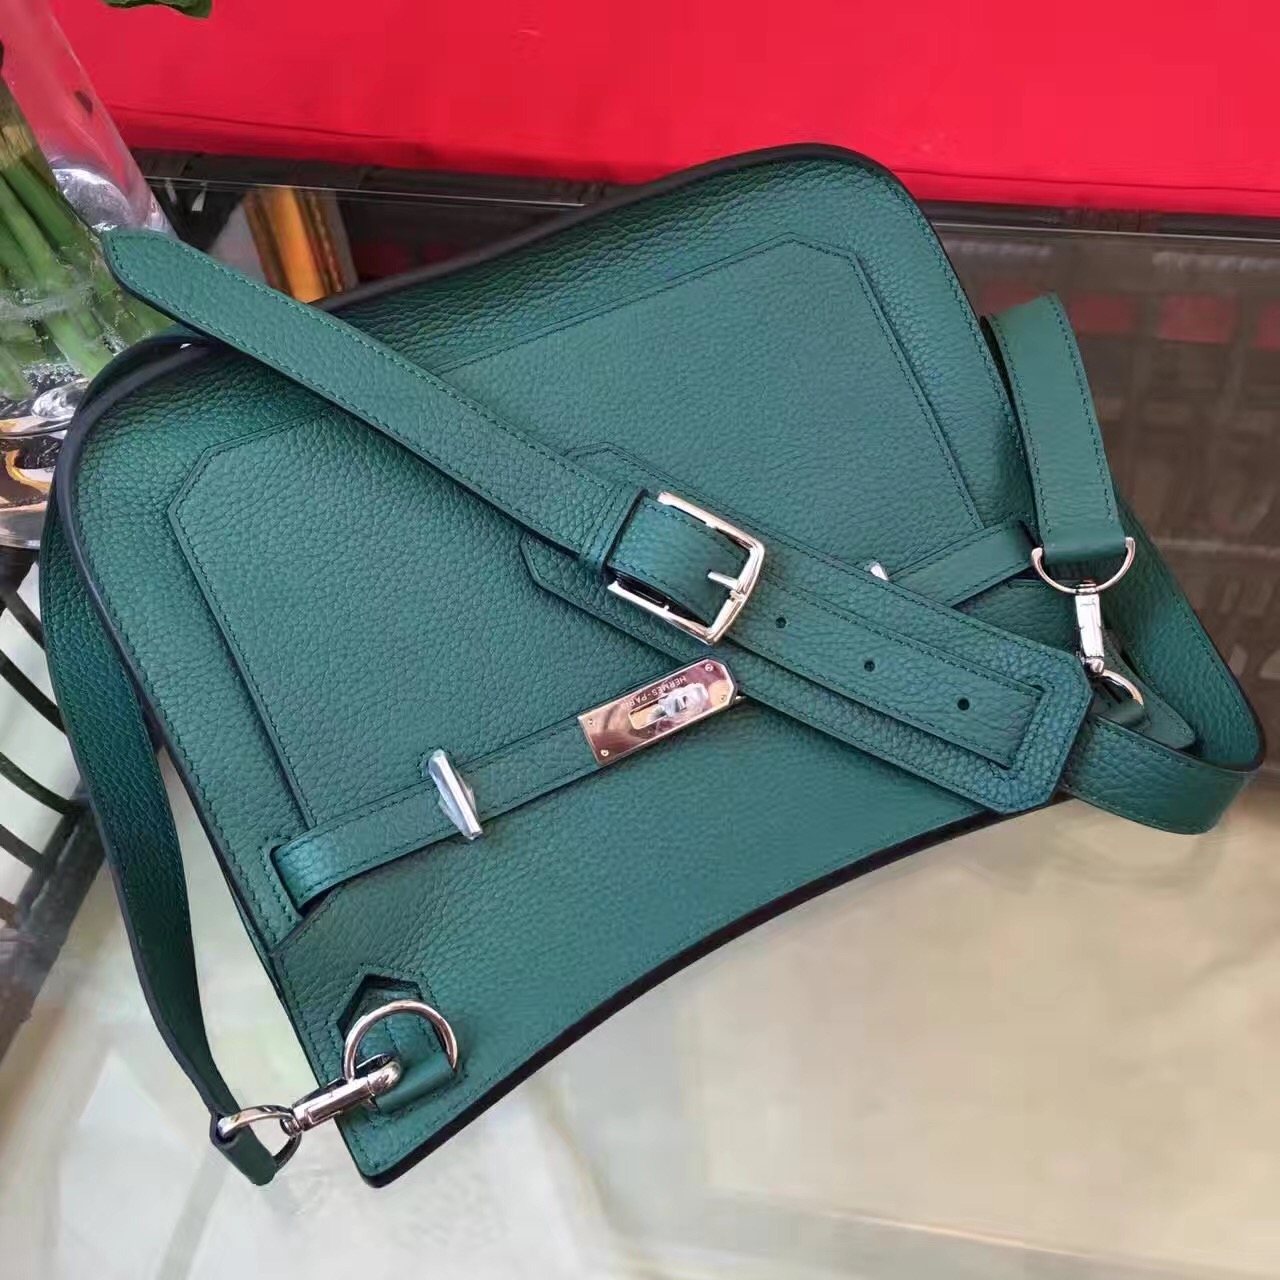 Hermes top leather green Jypsiere handbags [hermes440] - $836.00 ...